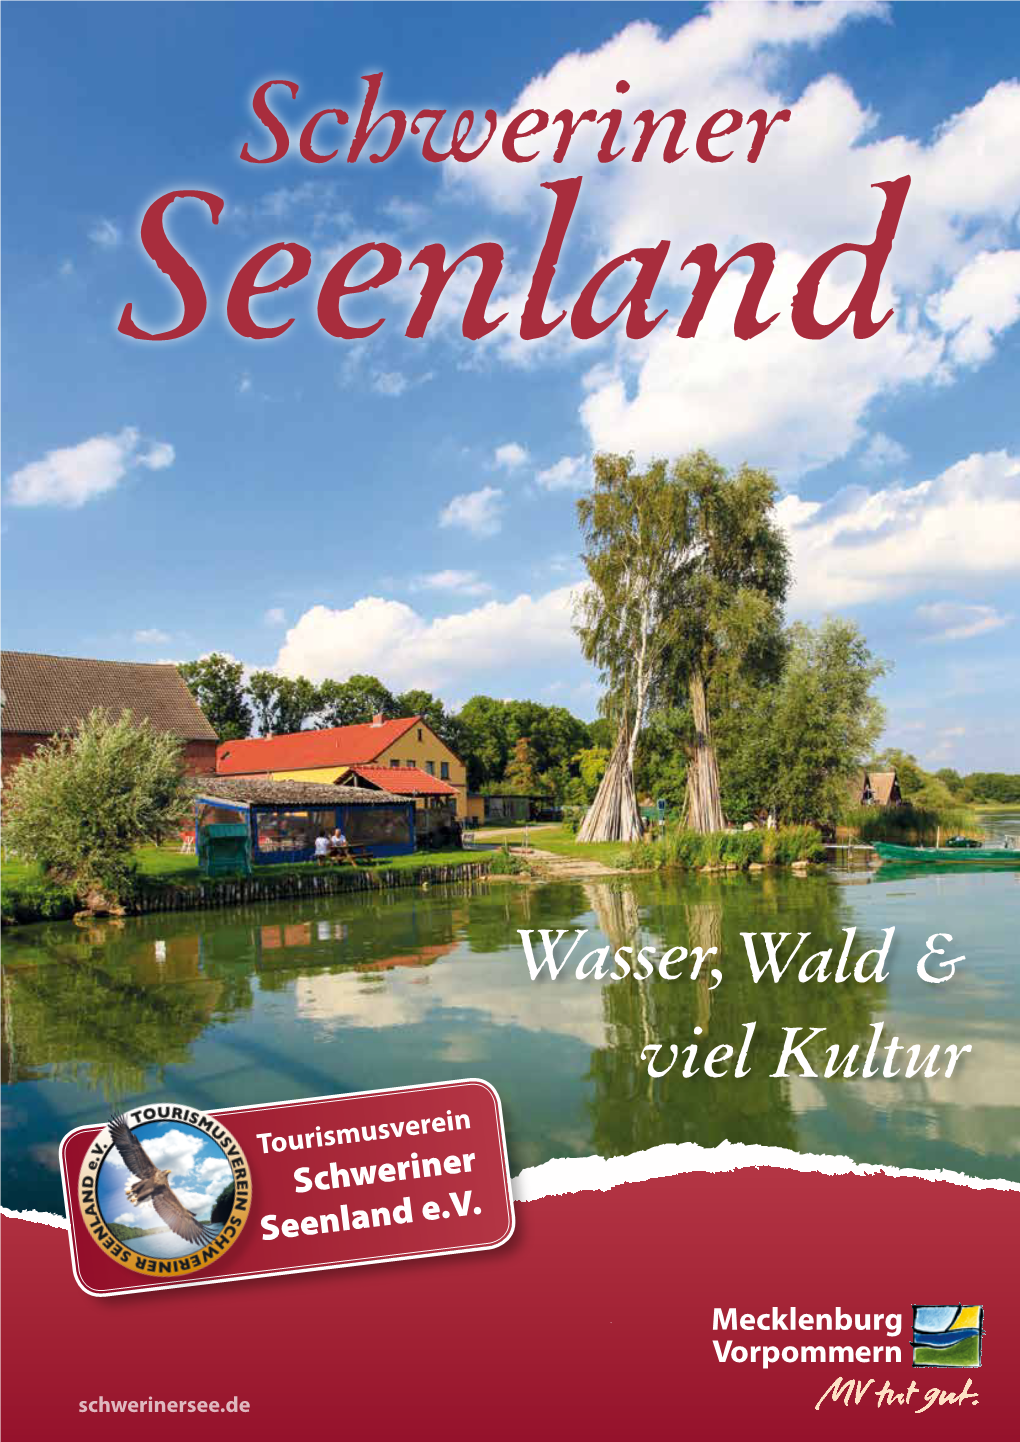 Schweriner Seenland E.V